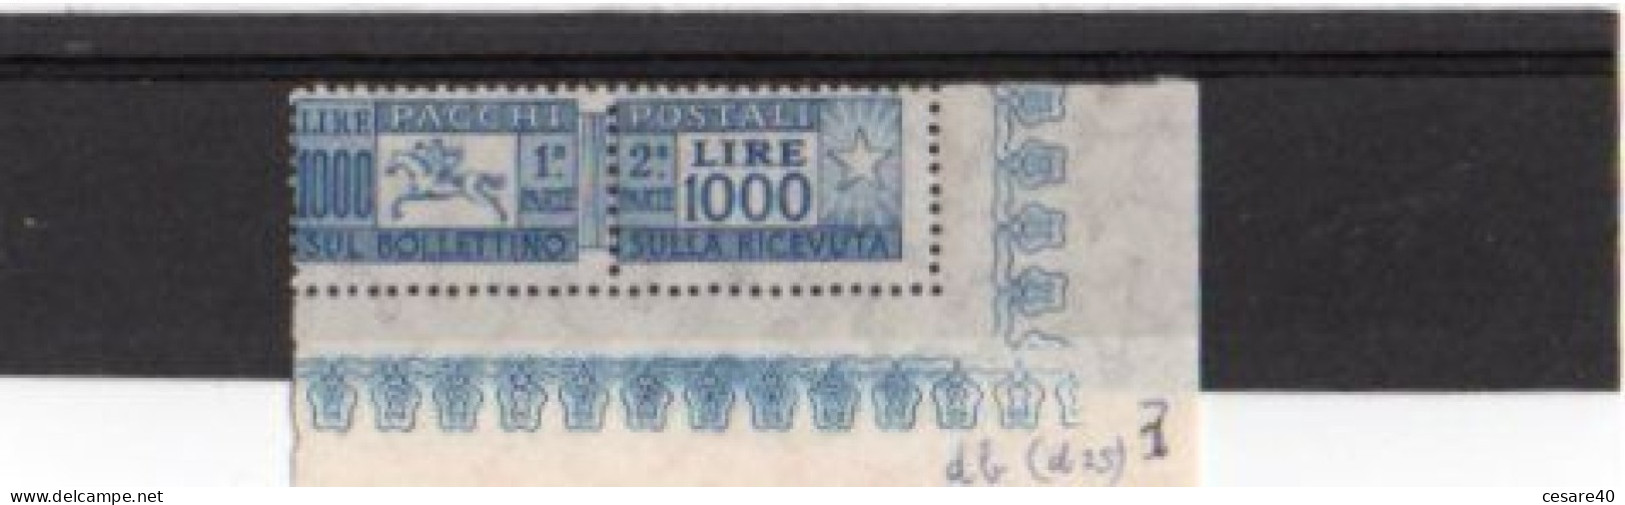 ITALIA - Pacchi Postali 1954 Coppia Di Lie1000 Filigrana A Stella Angolo Di Foglio, Nuovo MNH**  - Nov 2023-14 - Pacchi Postali